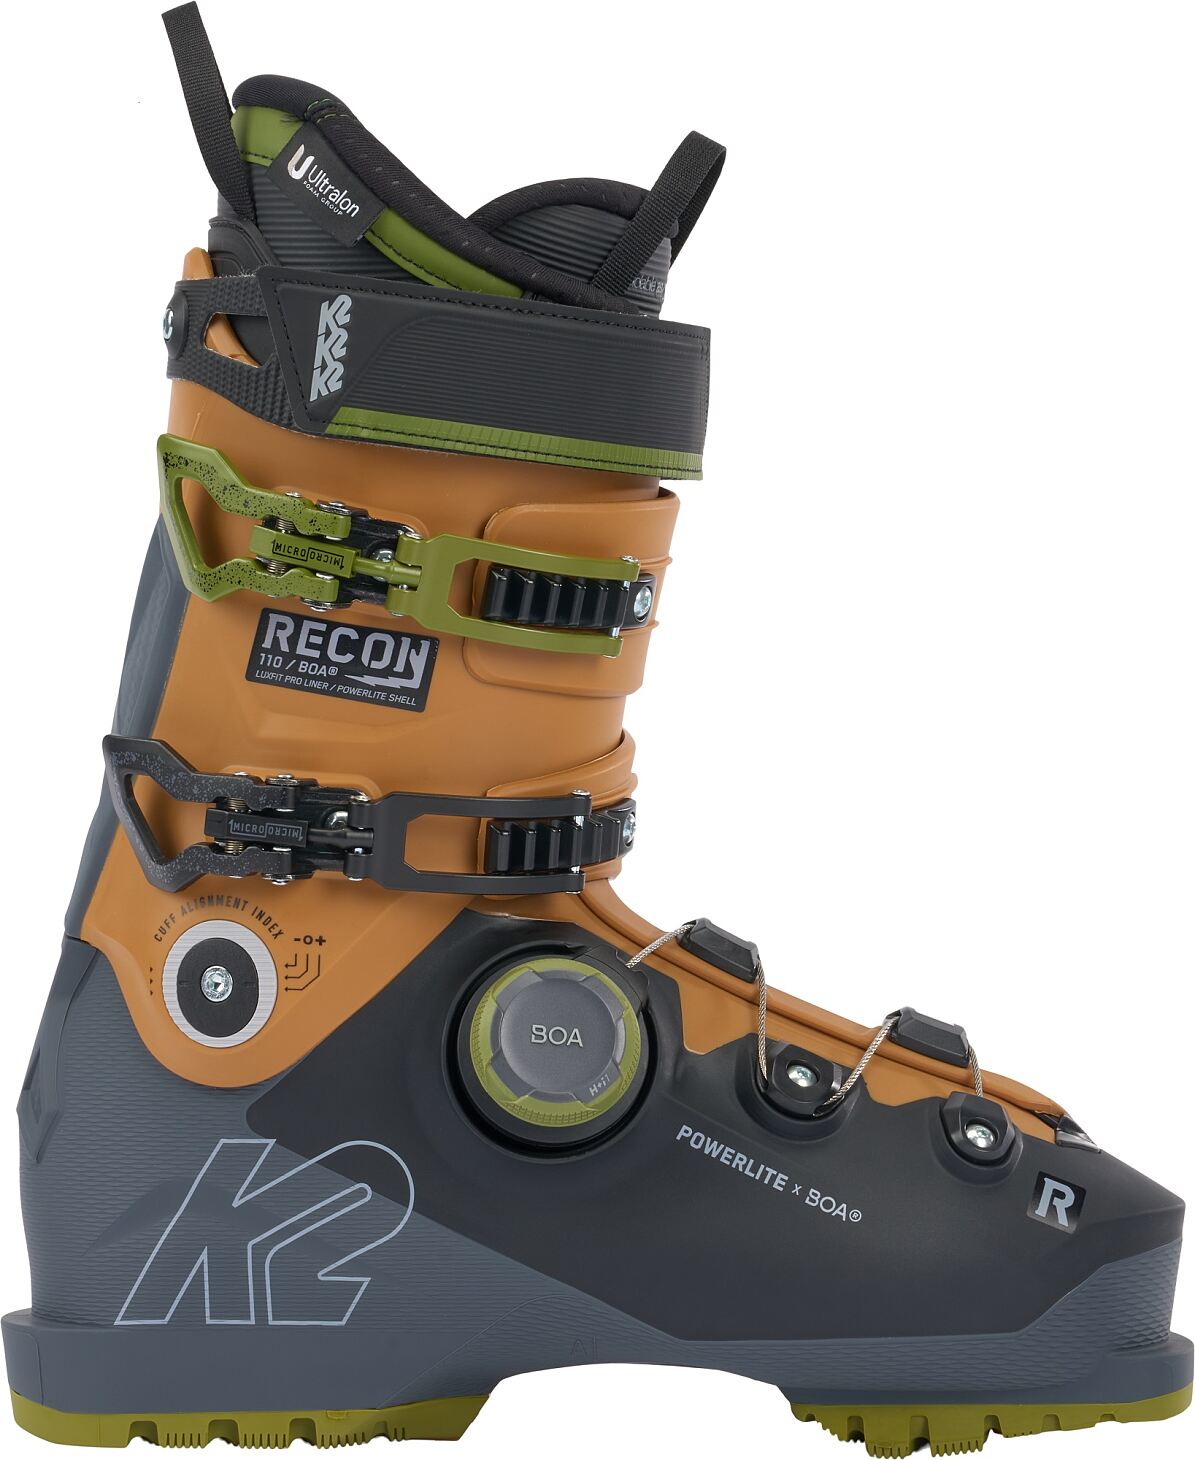 Erwachsenen-Skischuh Herren von K2 mit BOA-Technologie »RECON 110 BOA«